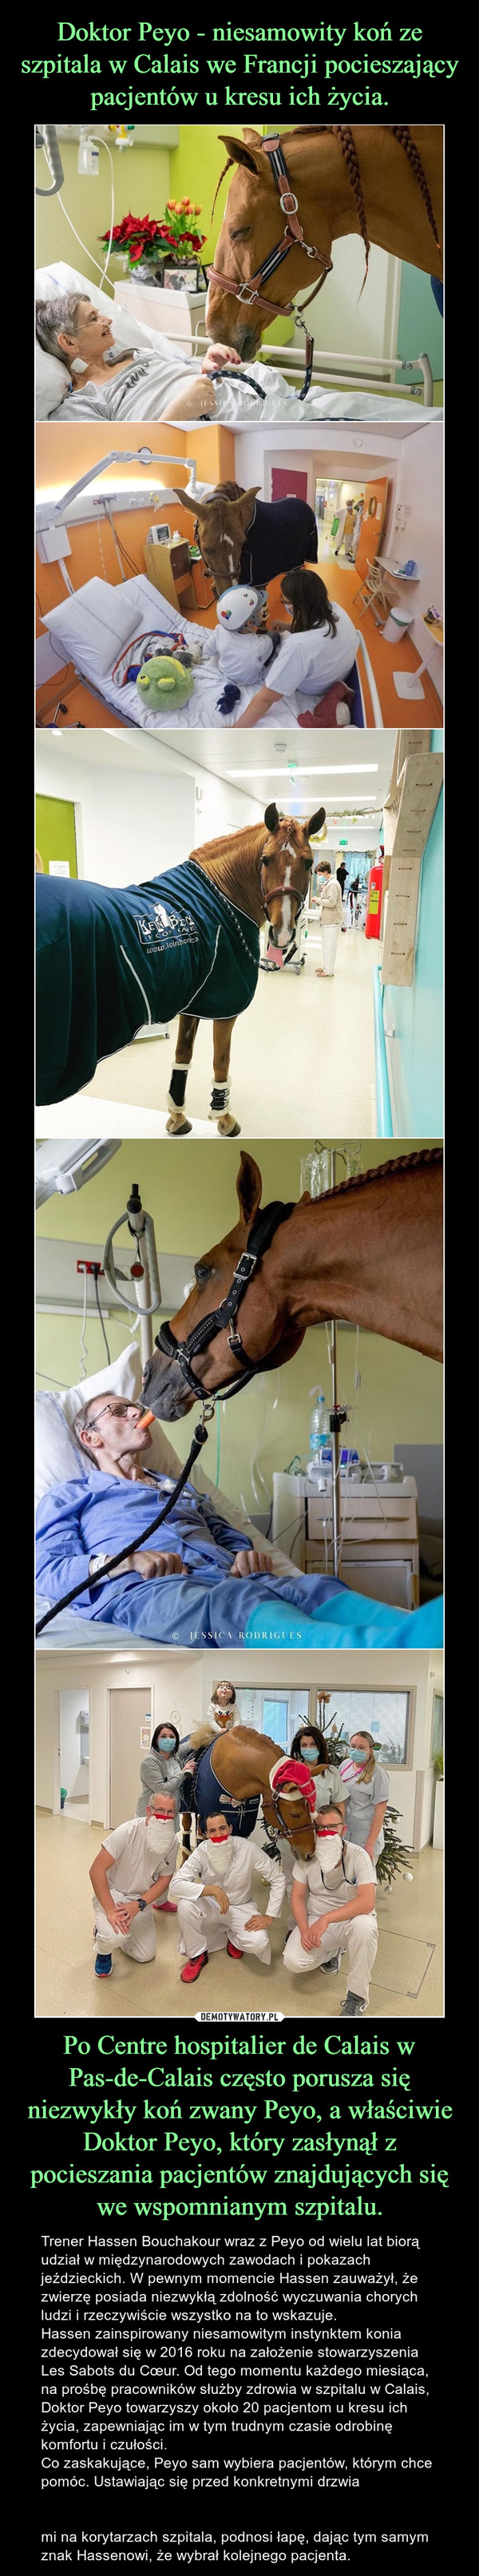 Doktor Peyo - niesamowity koń ze szpitala w Calais we Francji pocieszający pacjentów u kresu ich życia. Po Centre hospitalier de Calais w Pas-de-Calais często porusza się niezwykły koń zwany Peyo, a właściwie Doktor Peyo, który zasłynął z pocieszania pacjentów znajdujących się we wspomnianym szpitalu.